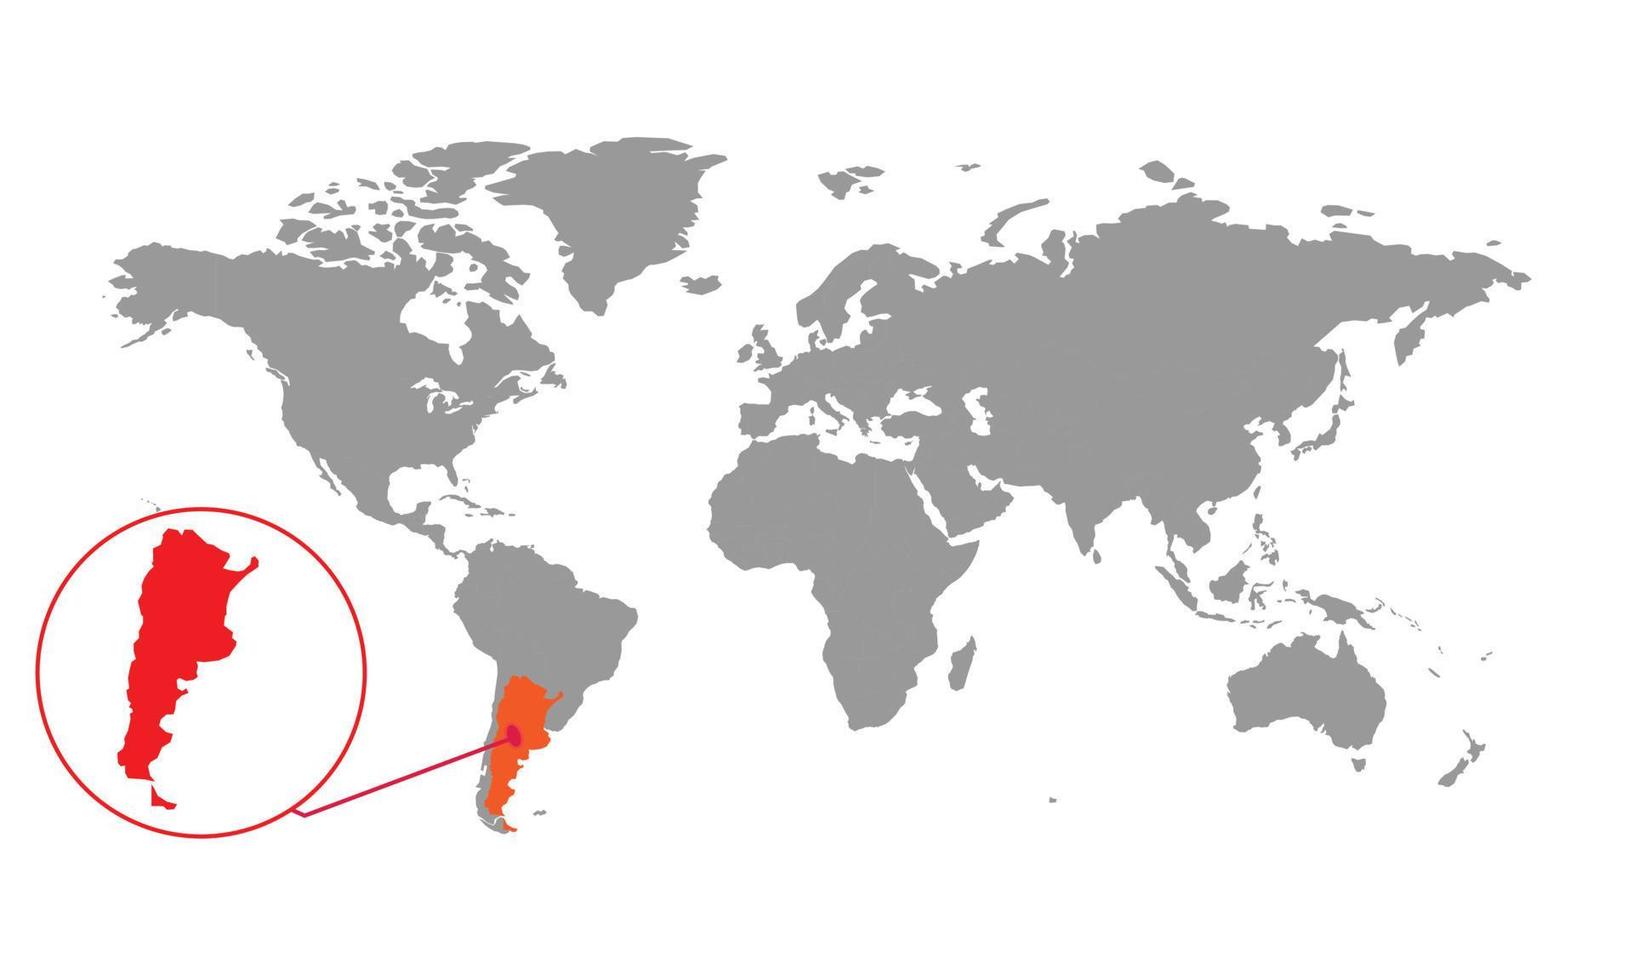 foco do mapa da argentina. mapa do mundo isolado. isolado no fundo branco. ilustração vetorial. vetor